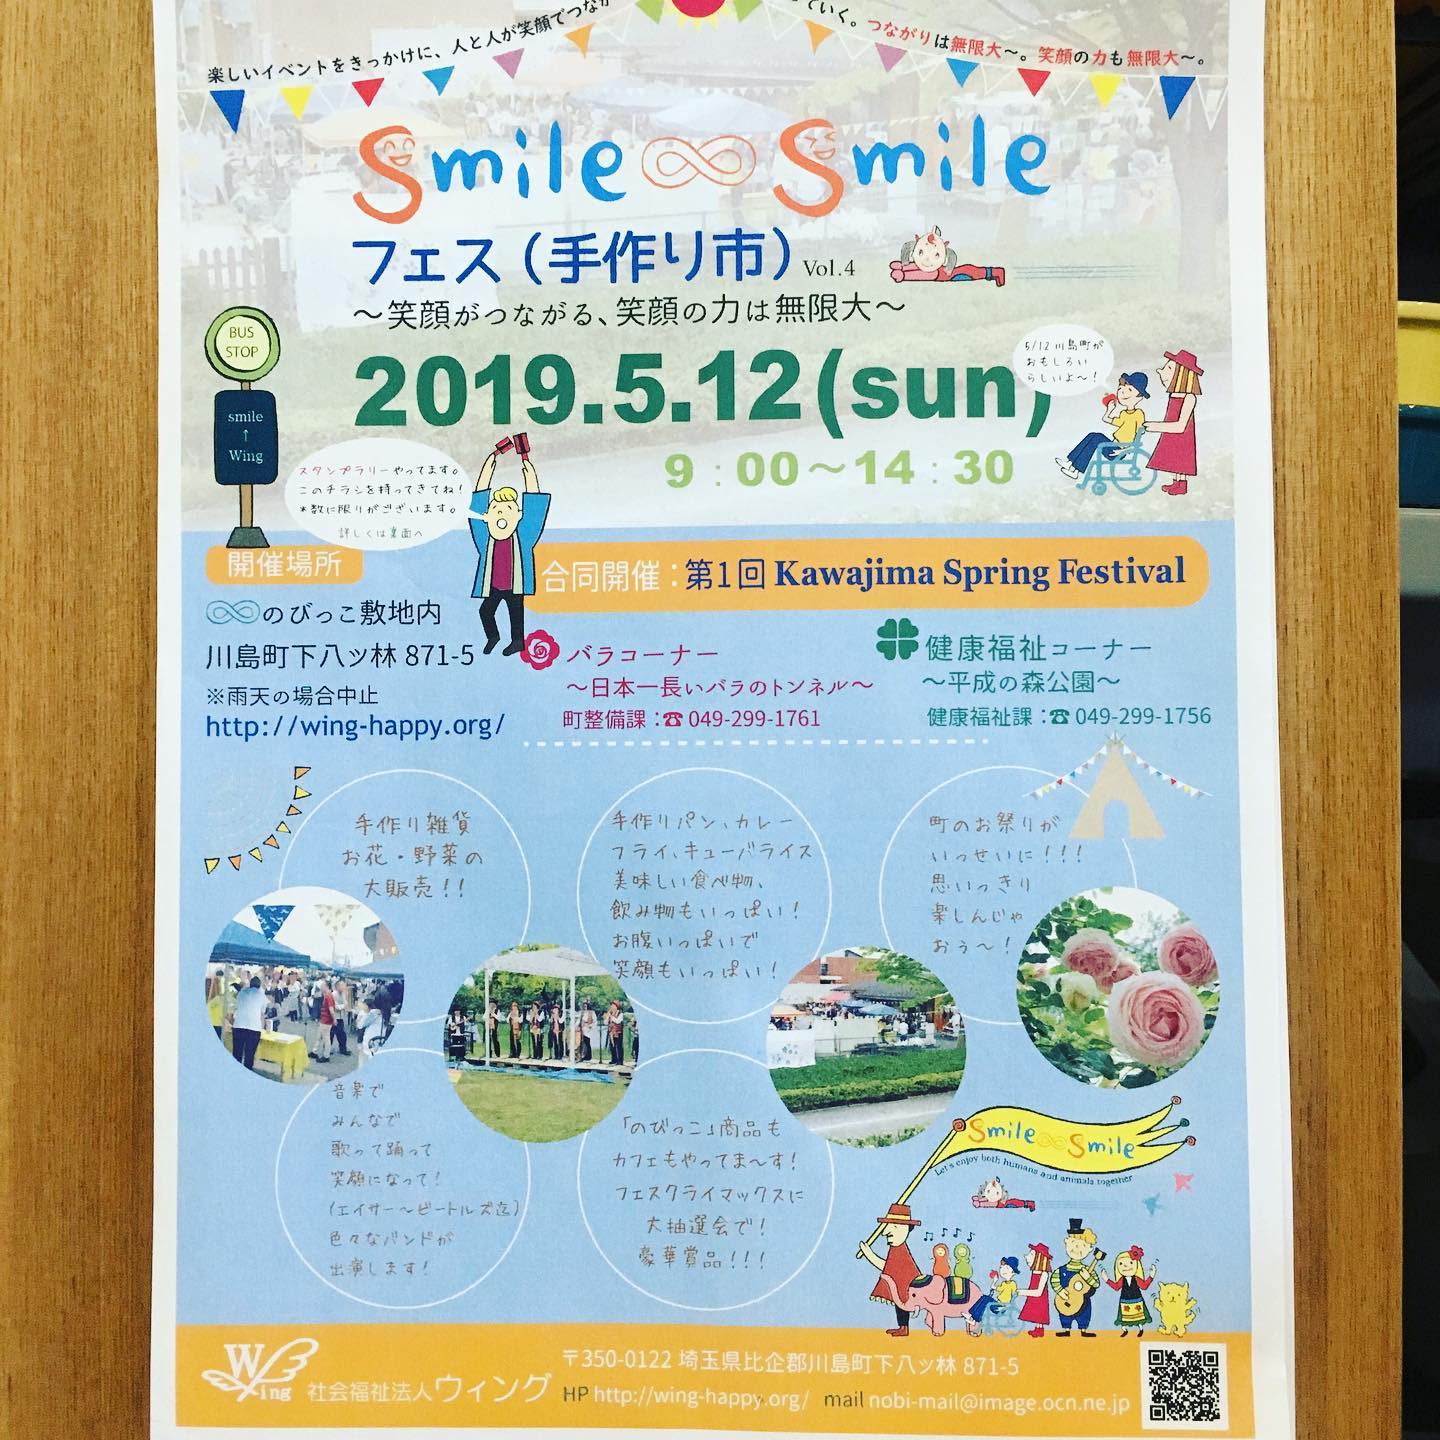 イナサンテーブルからお知らせです。

5/12日(日)9:00〜
埼玉県川島町の平成の森公園で開催される「smile ∞ smileフェス」に参加させていただきますー！

その為、勝手ながら前日の11日(土)のディナータイム、また、翌日の13日(月)のランチタイムはお休みをいただきます。

ご不便をおかけ致しますが、どうぞよろしくお願い致します。

フェスではお子さんたちが楽しく遊べる催しや、手作り雑貨の販売、綺麗なバラのトンネルが見られたり、楽しい事がたくさん体験できるそうなので、お近くにいらした際は、是非足を運んでみてください(^-^)